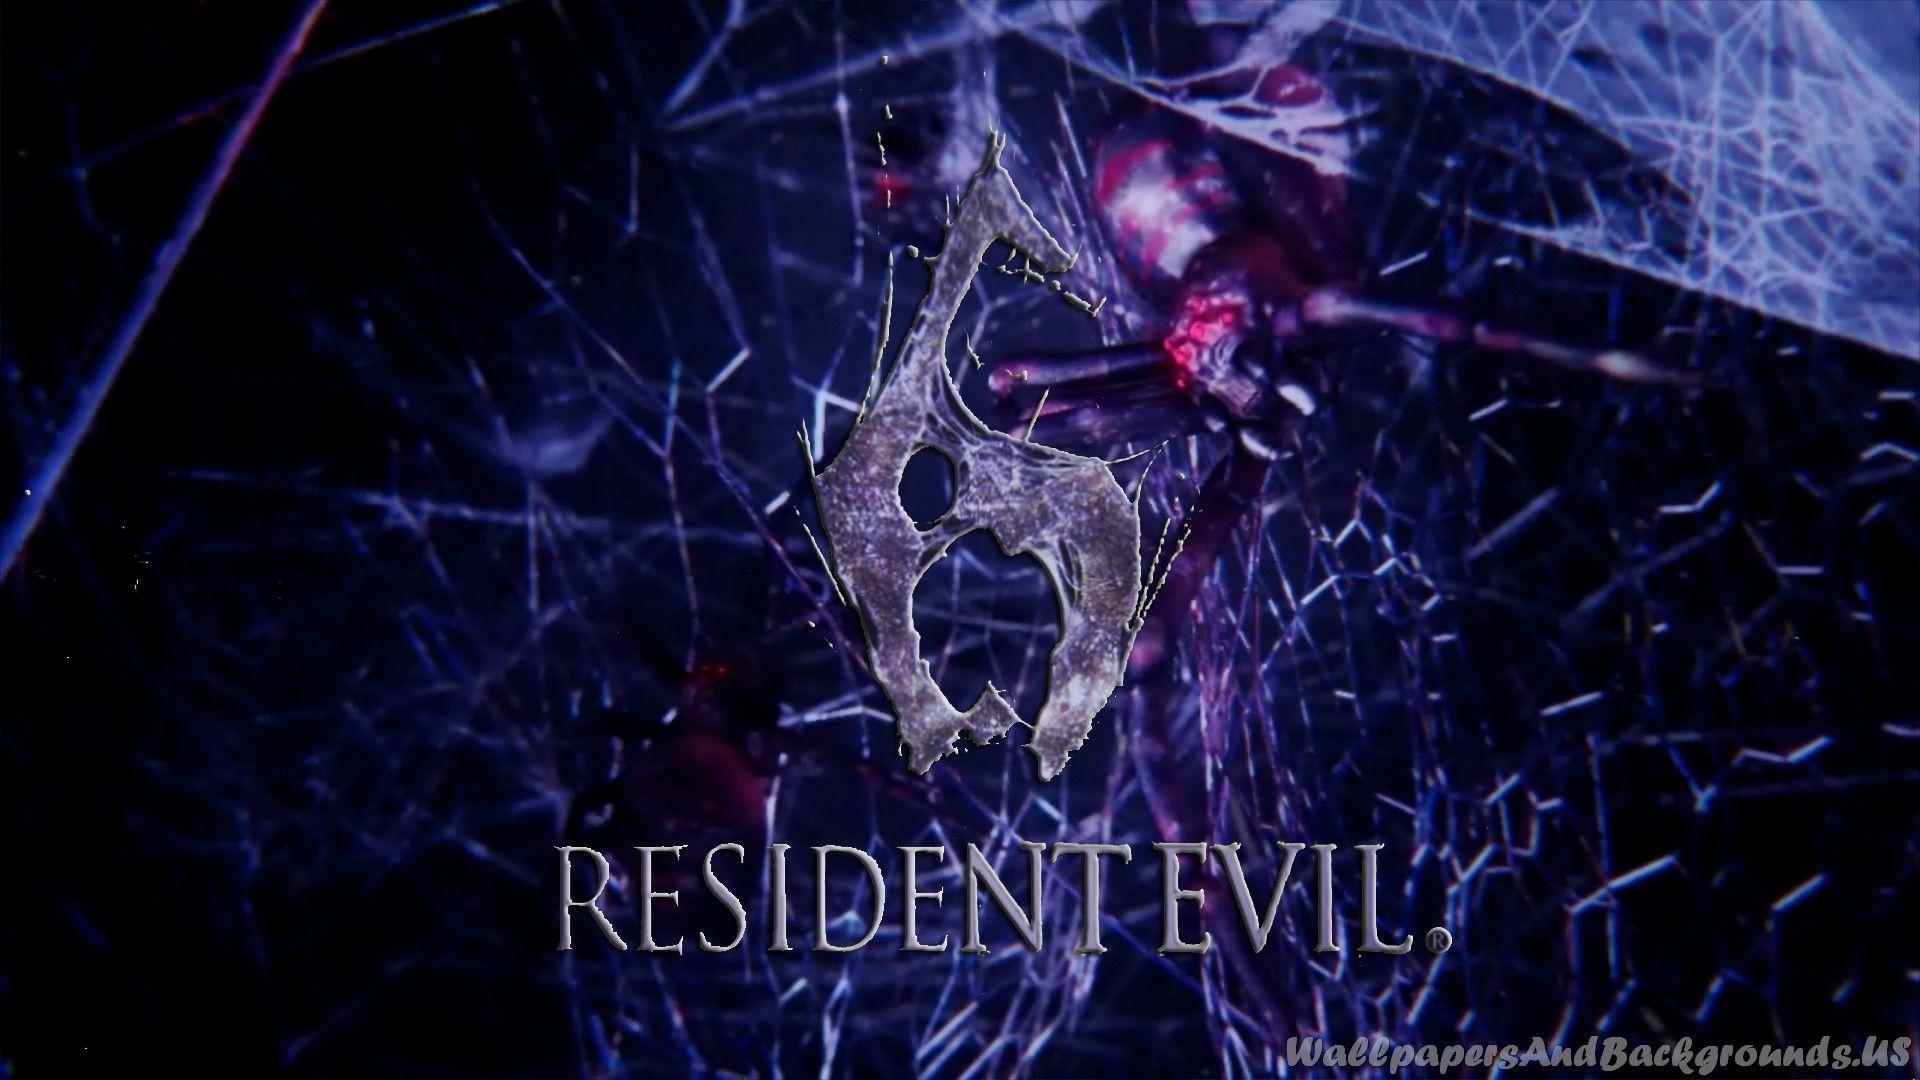 resident evil 6 logo